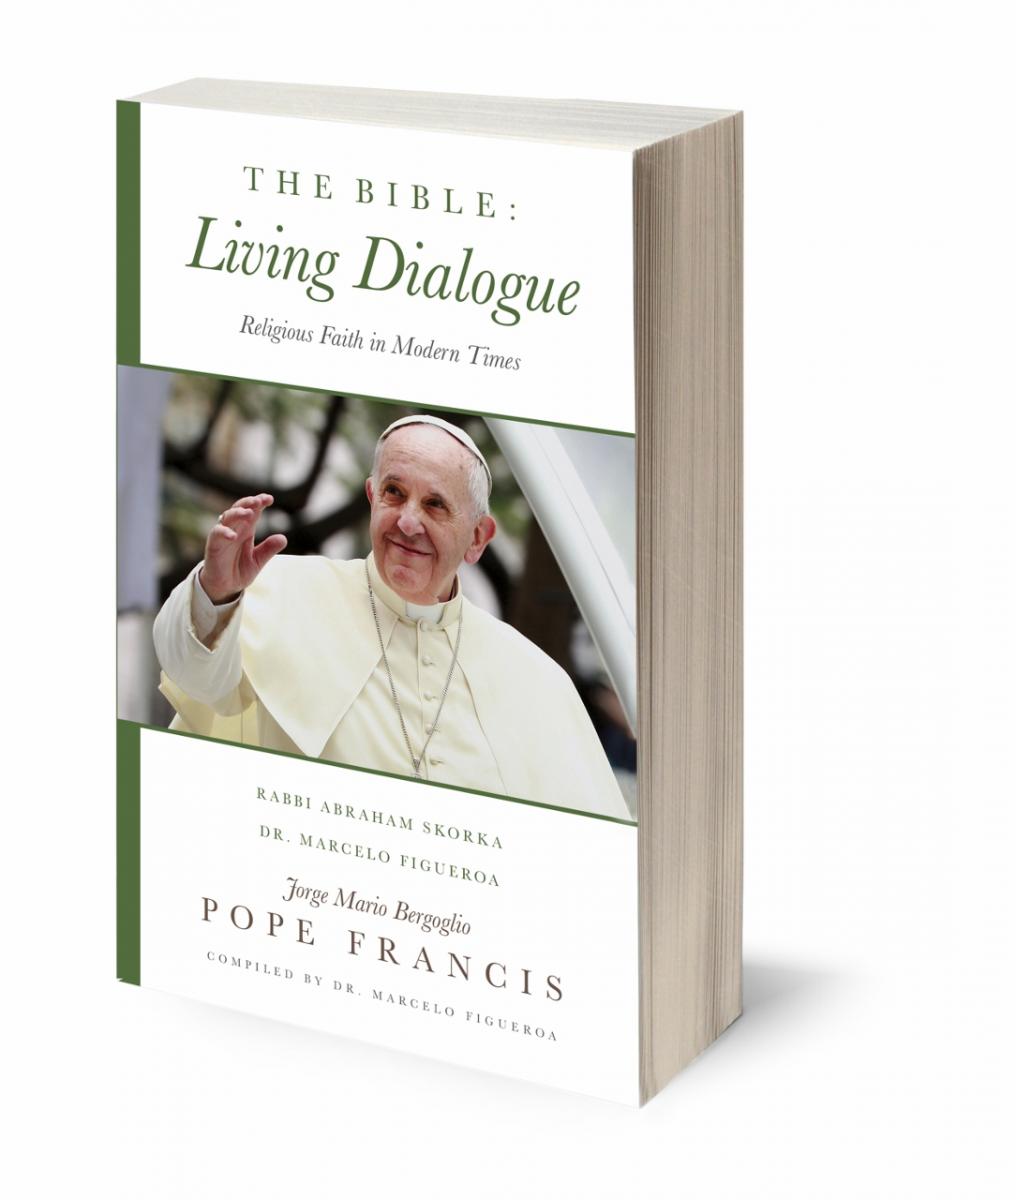 The Bible: Living Dialogue